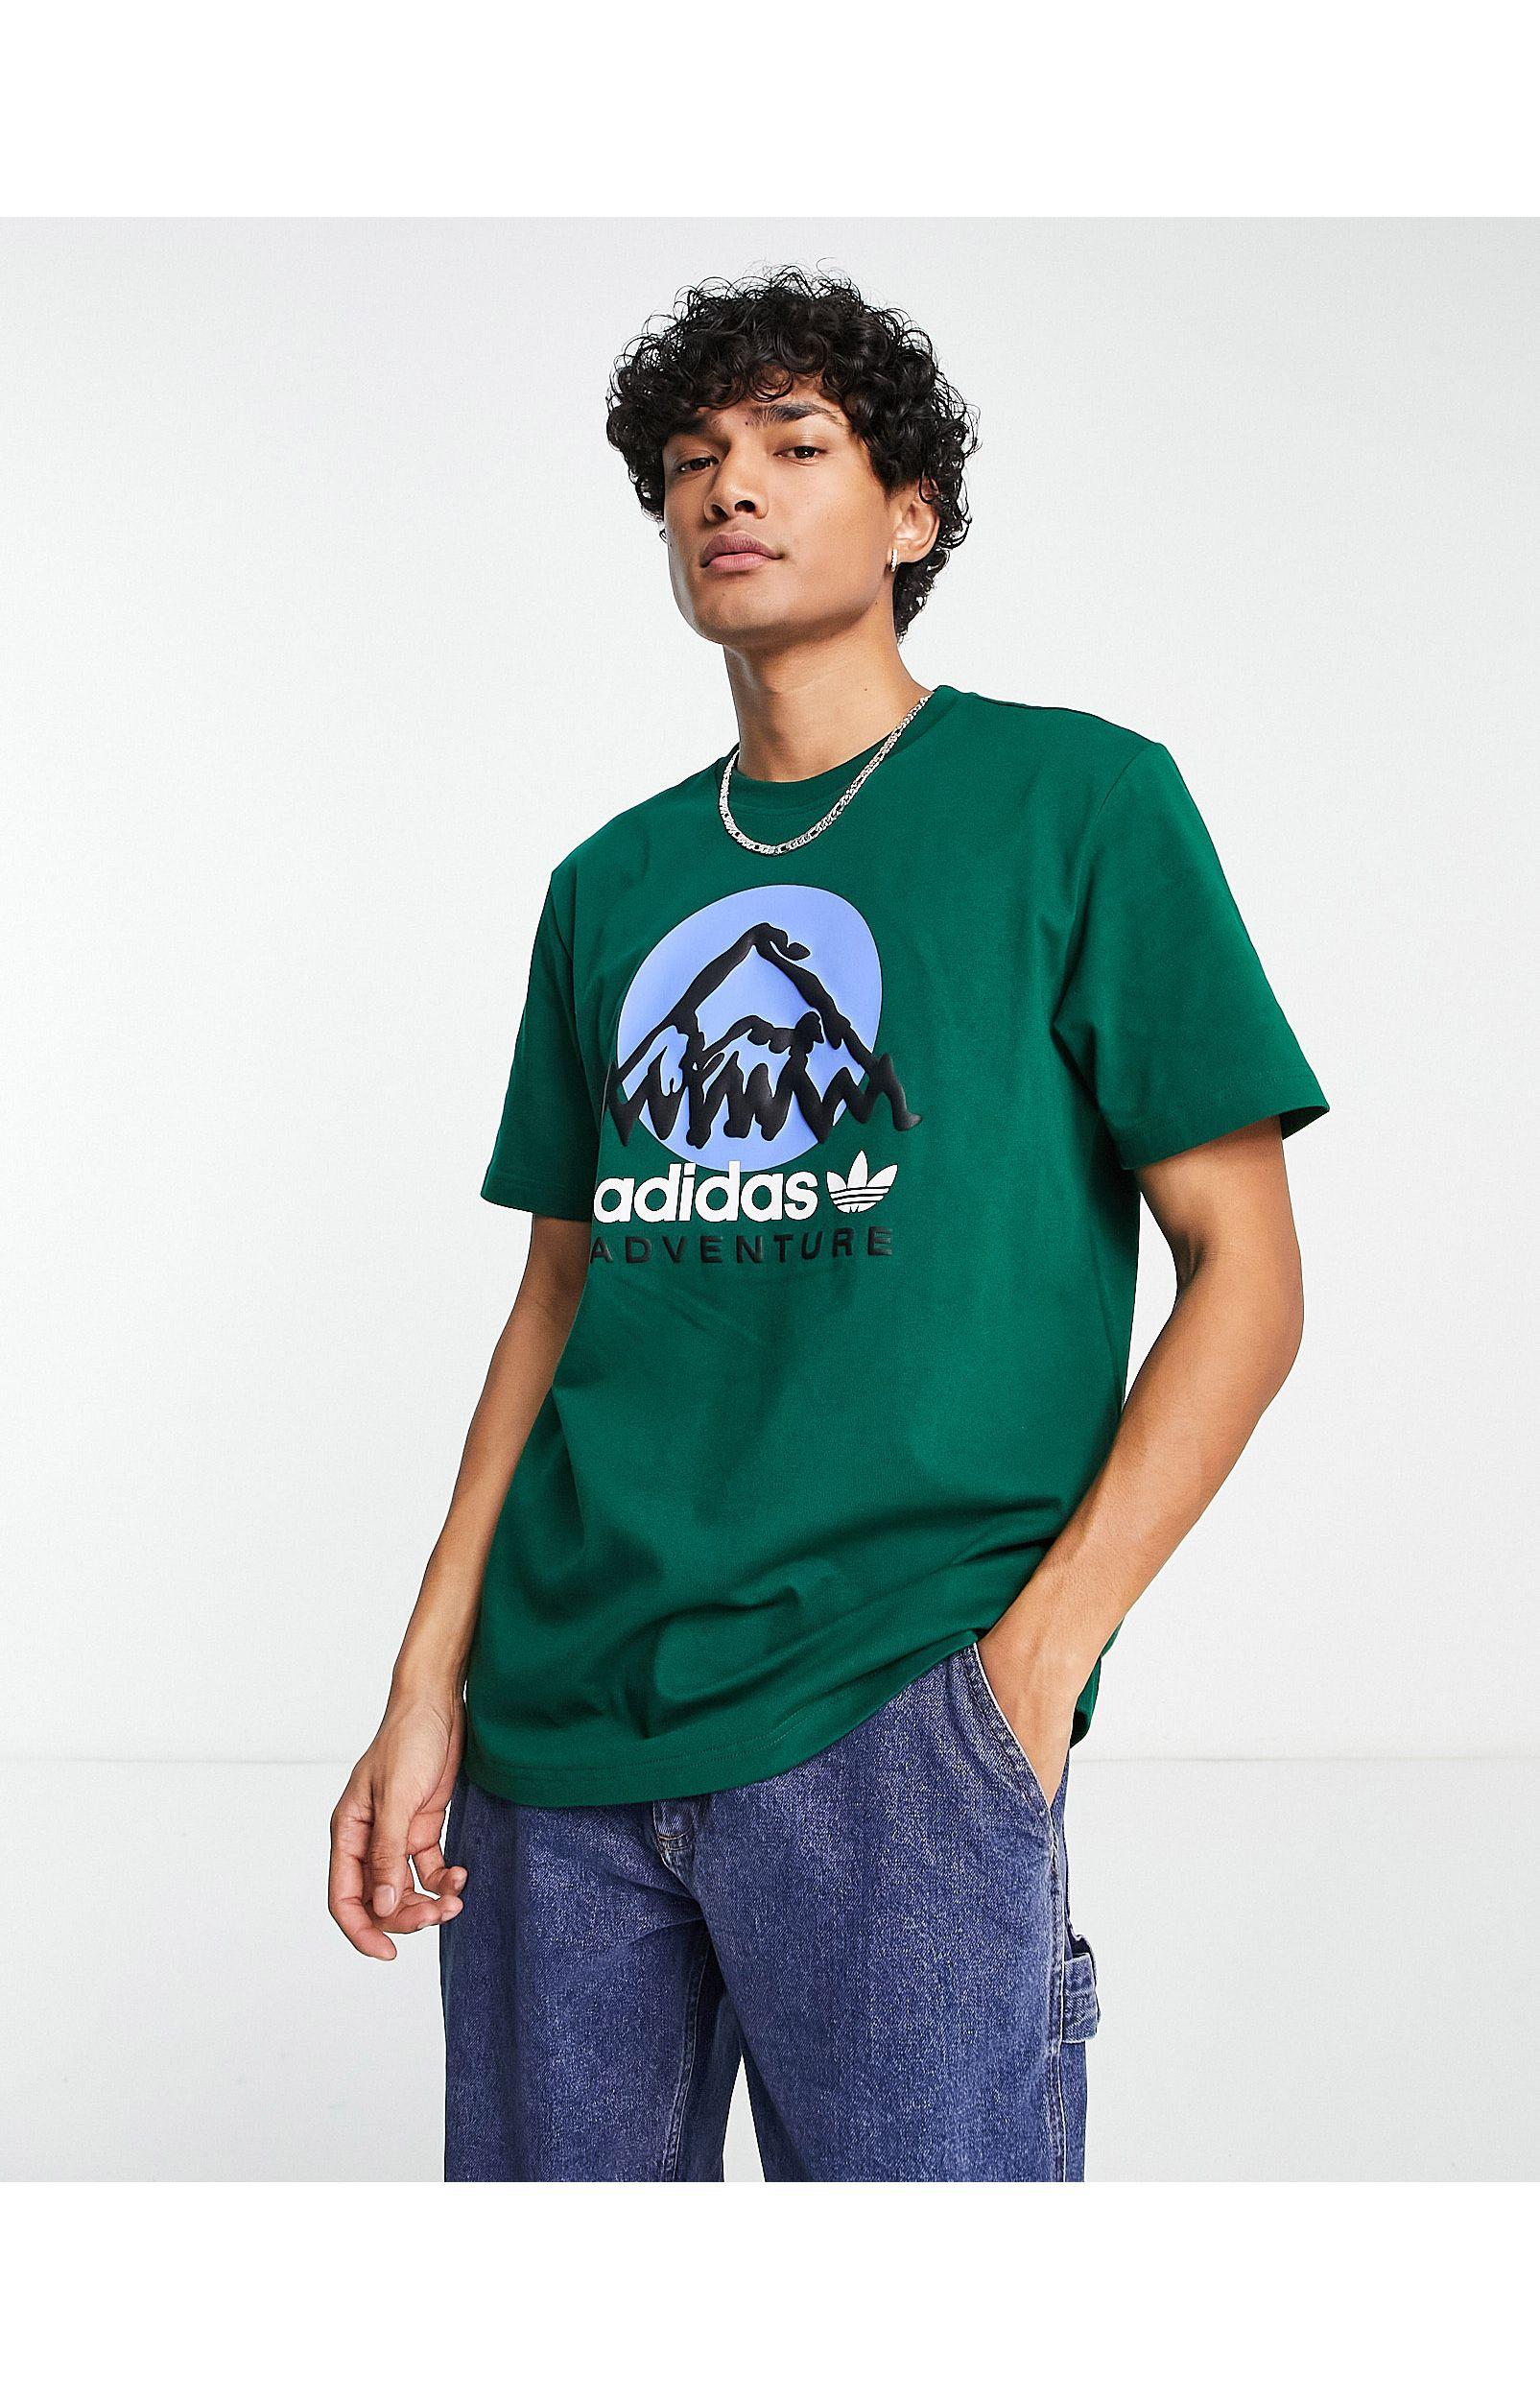 adidas Originals – adventure – t-shirt in Grün für Herren | Lyst DE